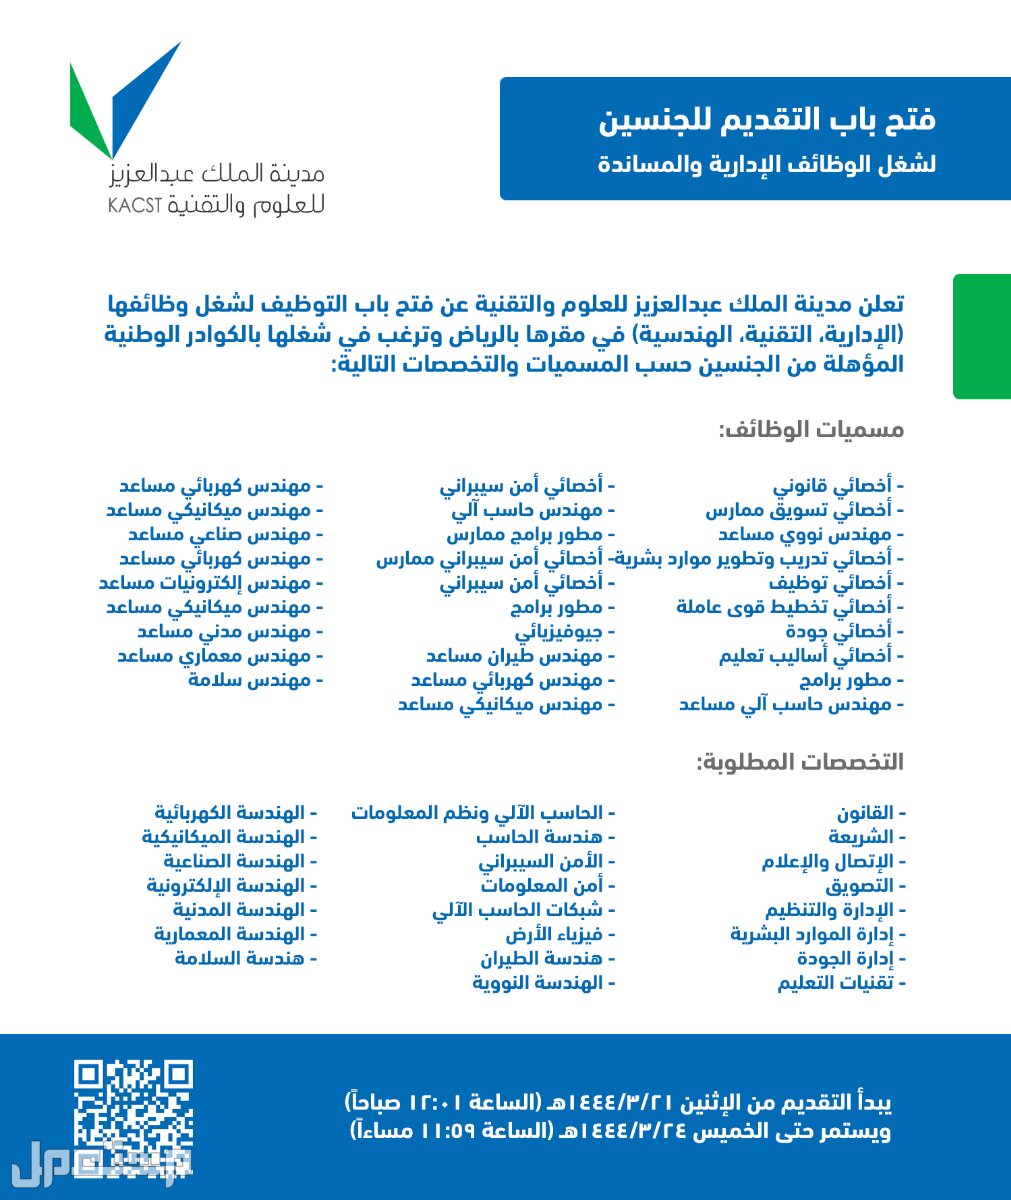 كل ما تحتاج إلى معرفته حول وظائف مدينة الملك عبدالعزيز للعلوم والتقنية في جيبوتي وظائف مدينة الملك عبدالعزيز للعلوم والتقنية